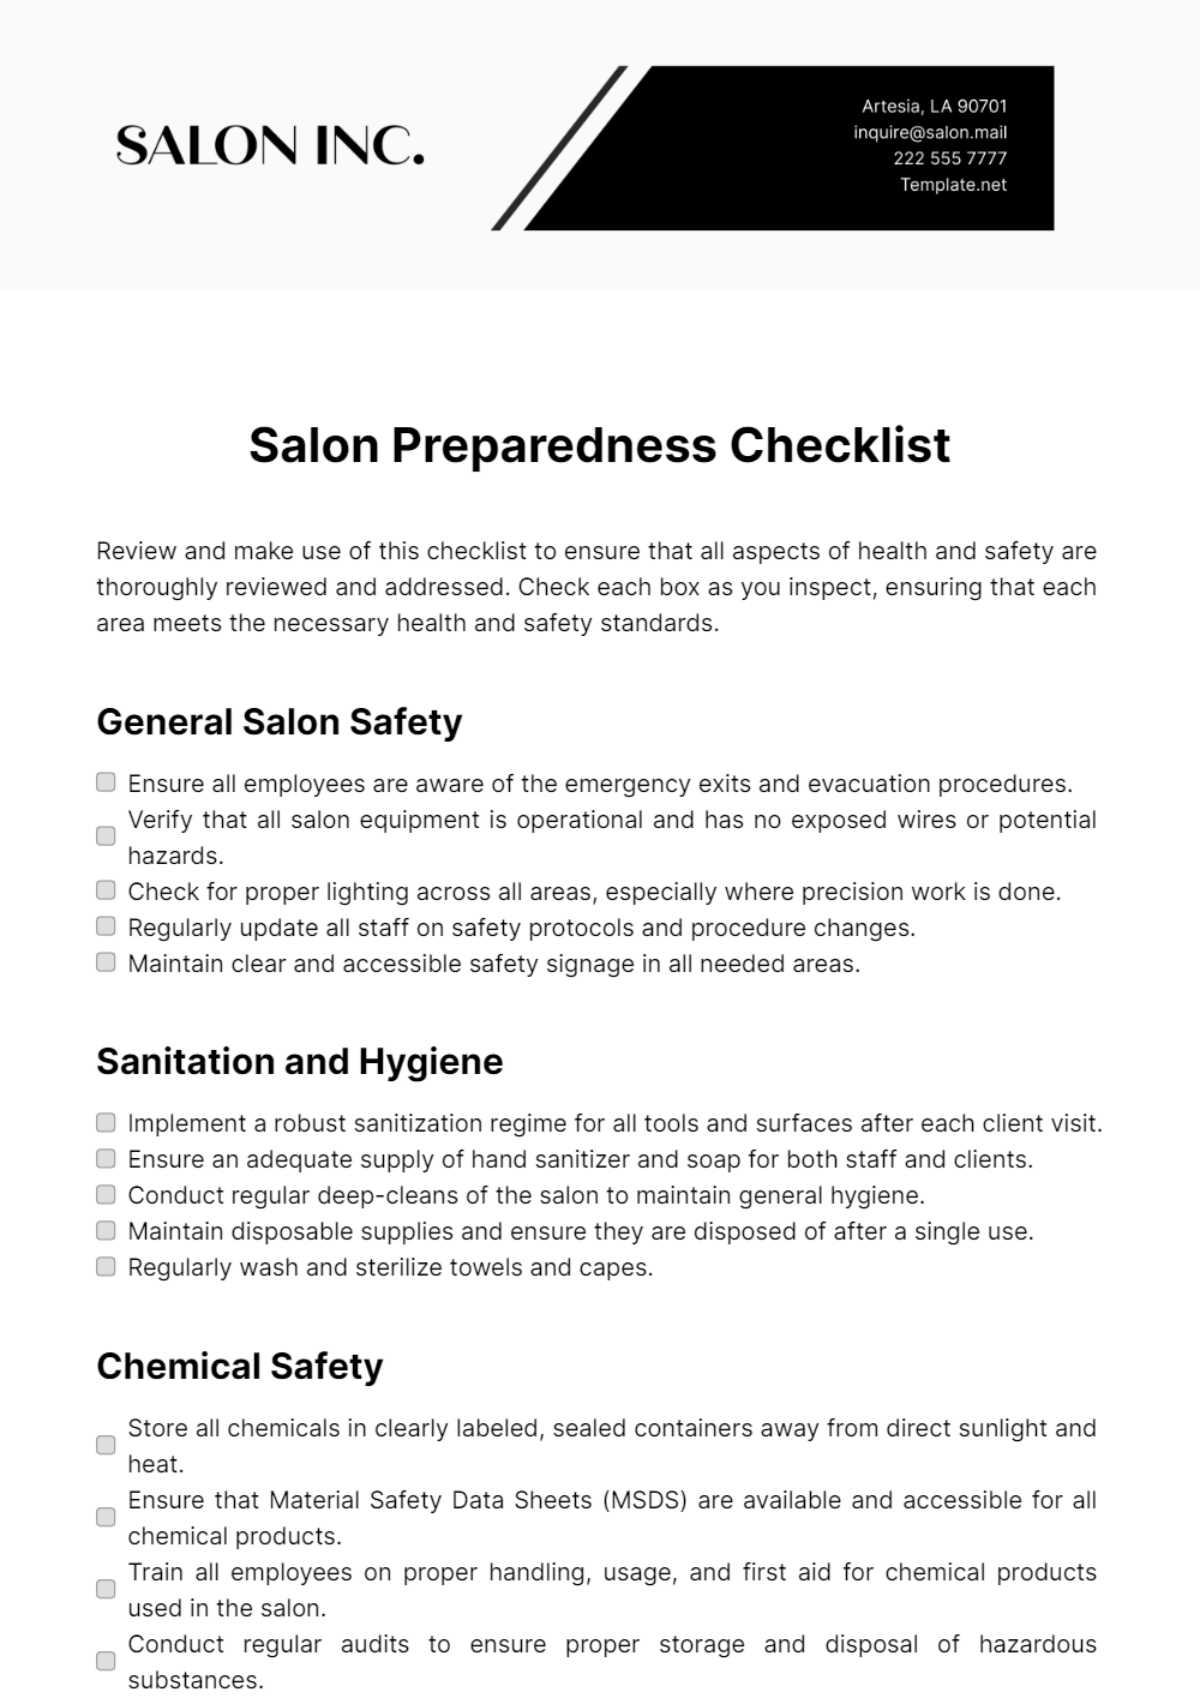 Salon Preparedness Checklist Template